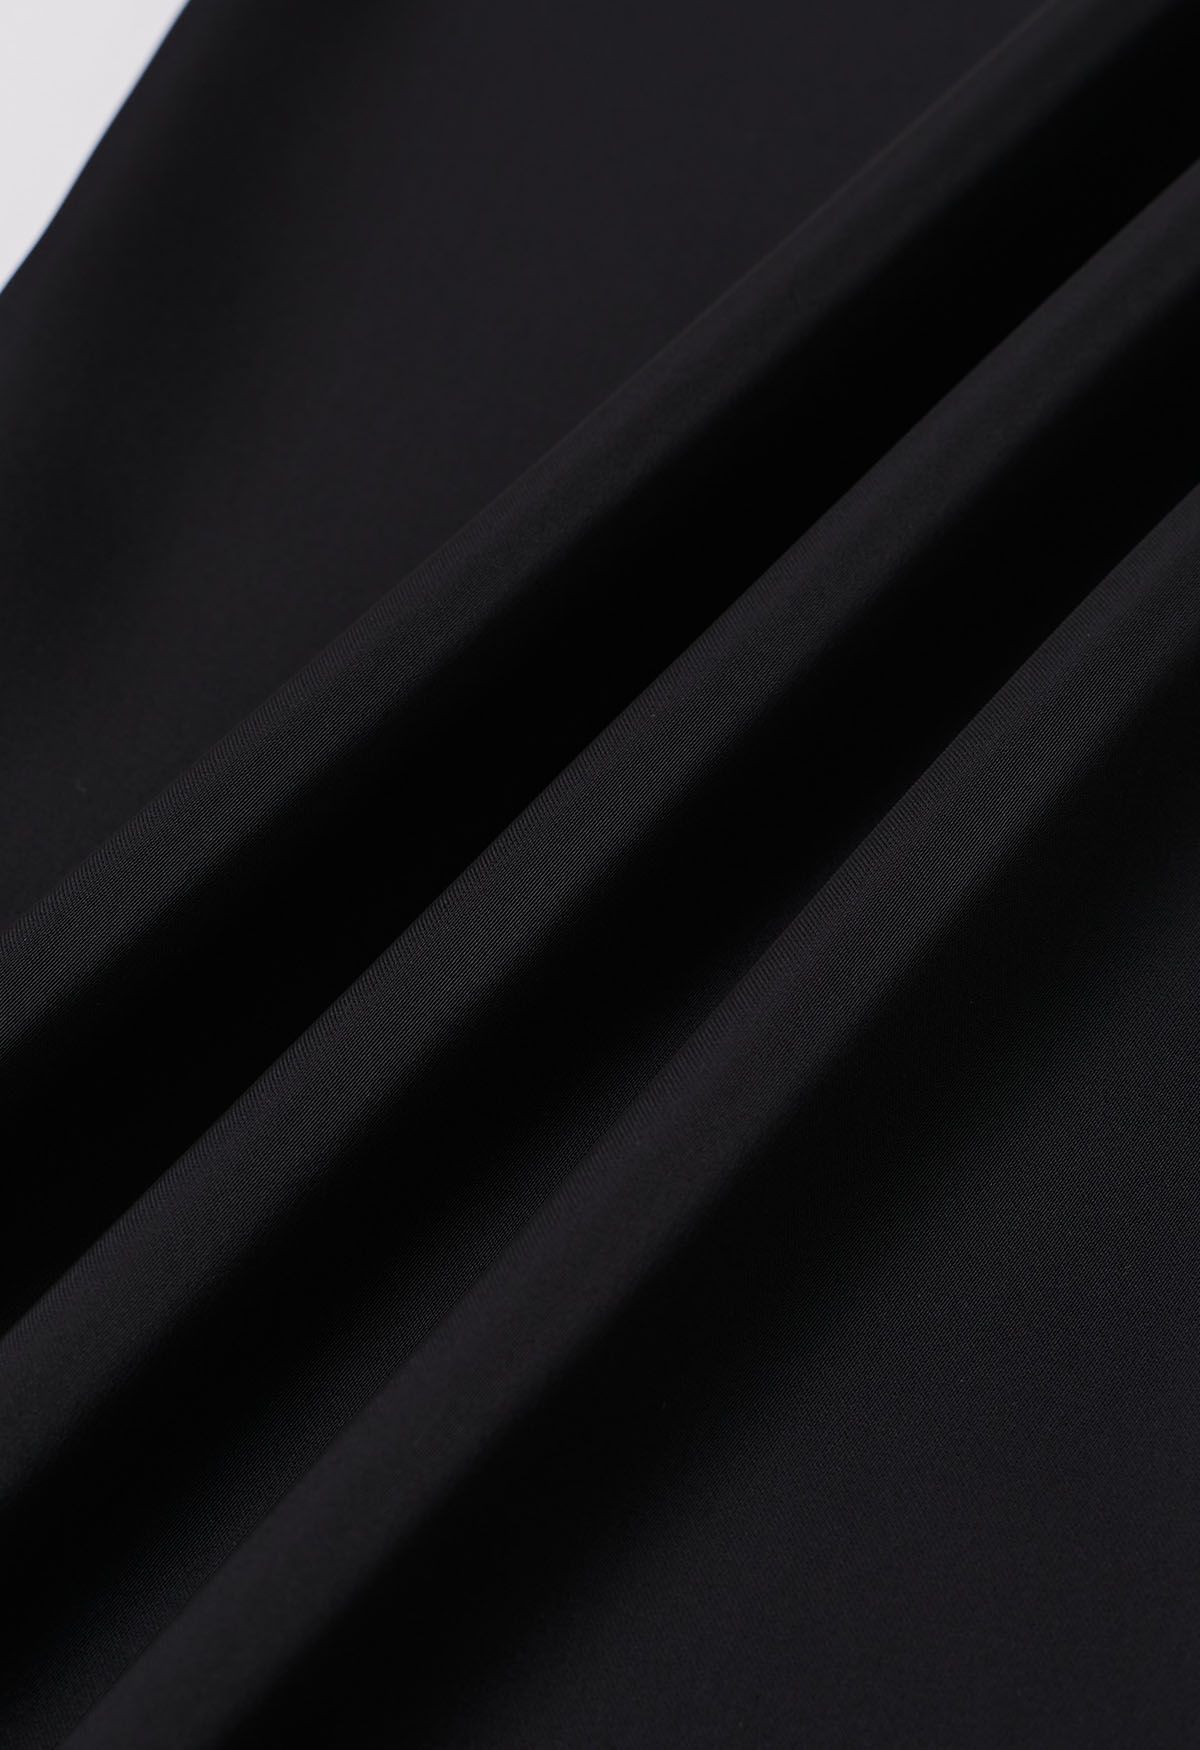 Pantalones sin cordones con acabado satinado en negro